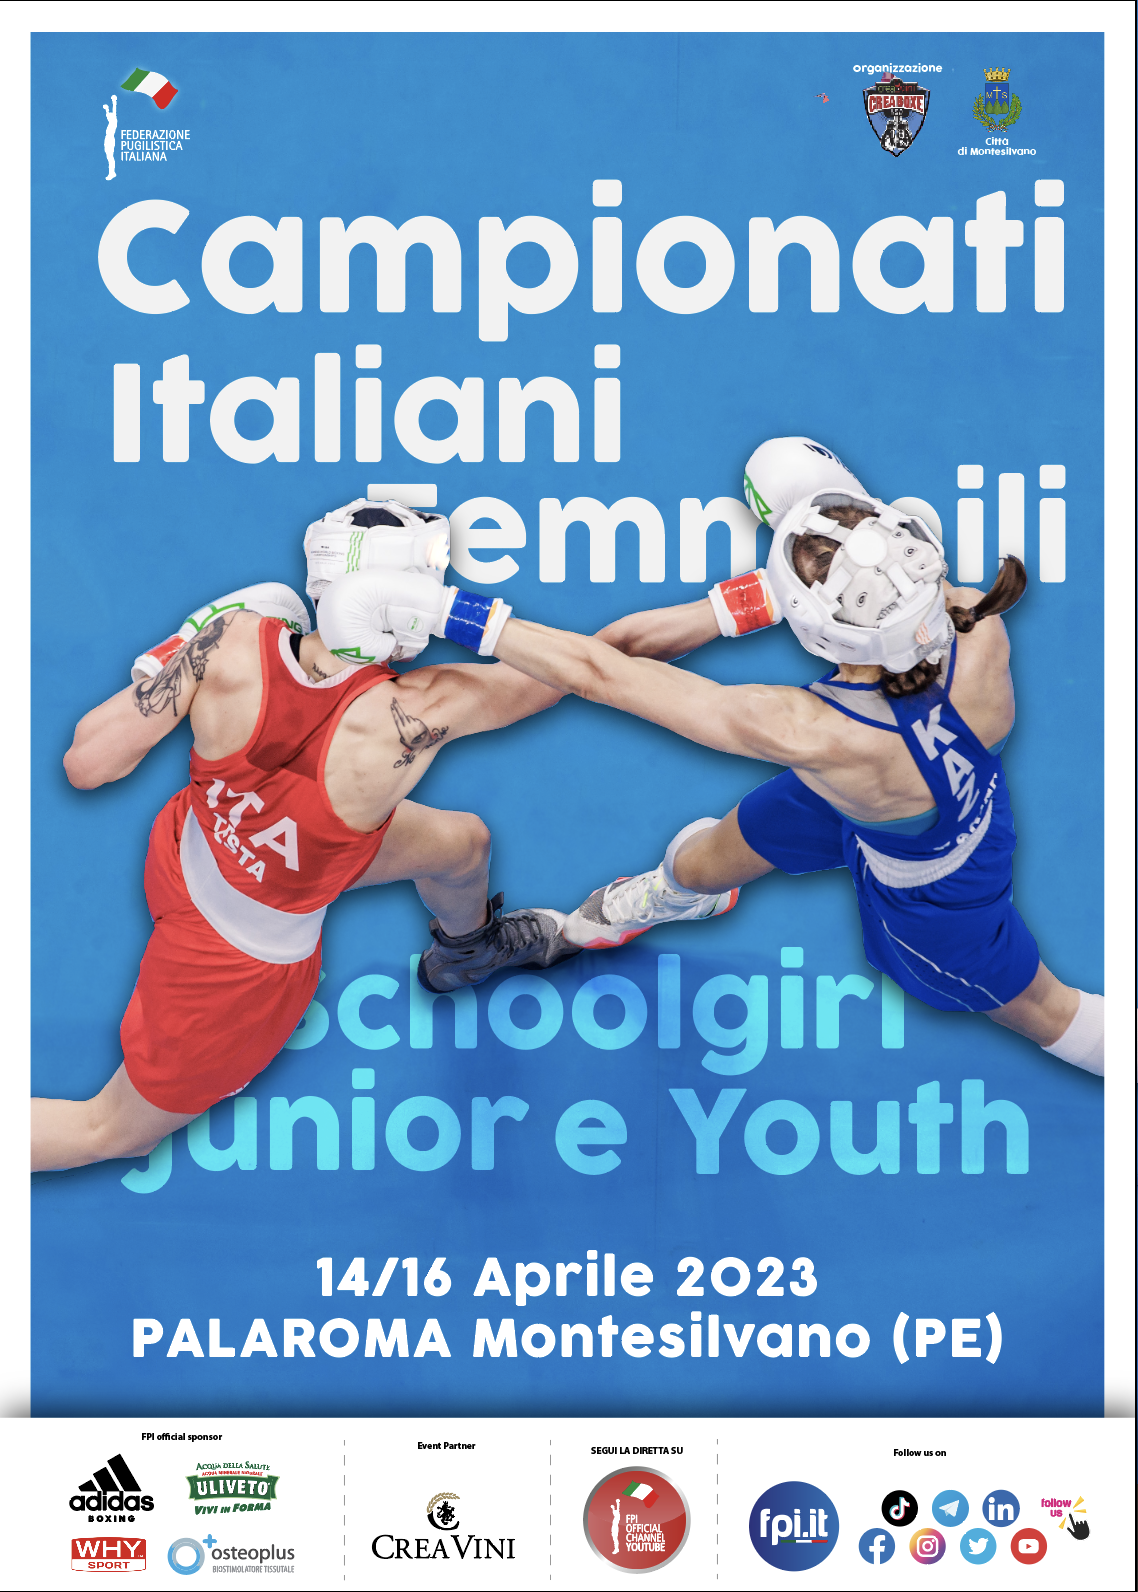 Campionati Italiani Schoolgirl, Junior e Youth F 2023 - Montesilvano 14-16 Aprile p.v. - LOCANDINA UFFICIALE 